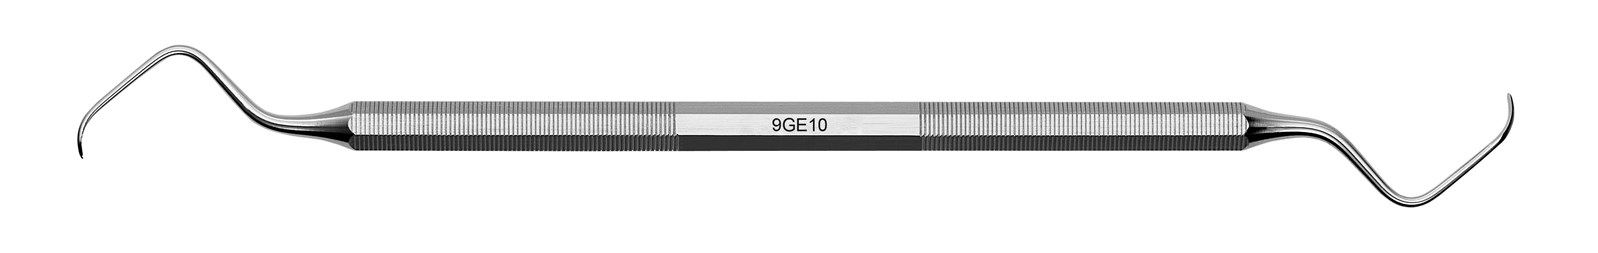 Kyreta Gracey Classic - 9GE10, ADEP silikonový návlek fialový